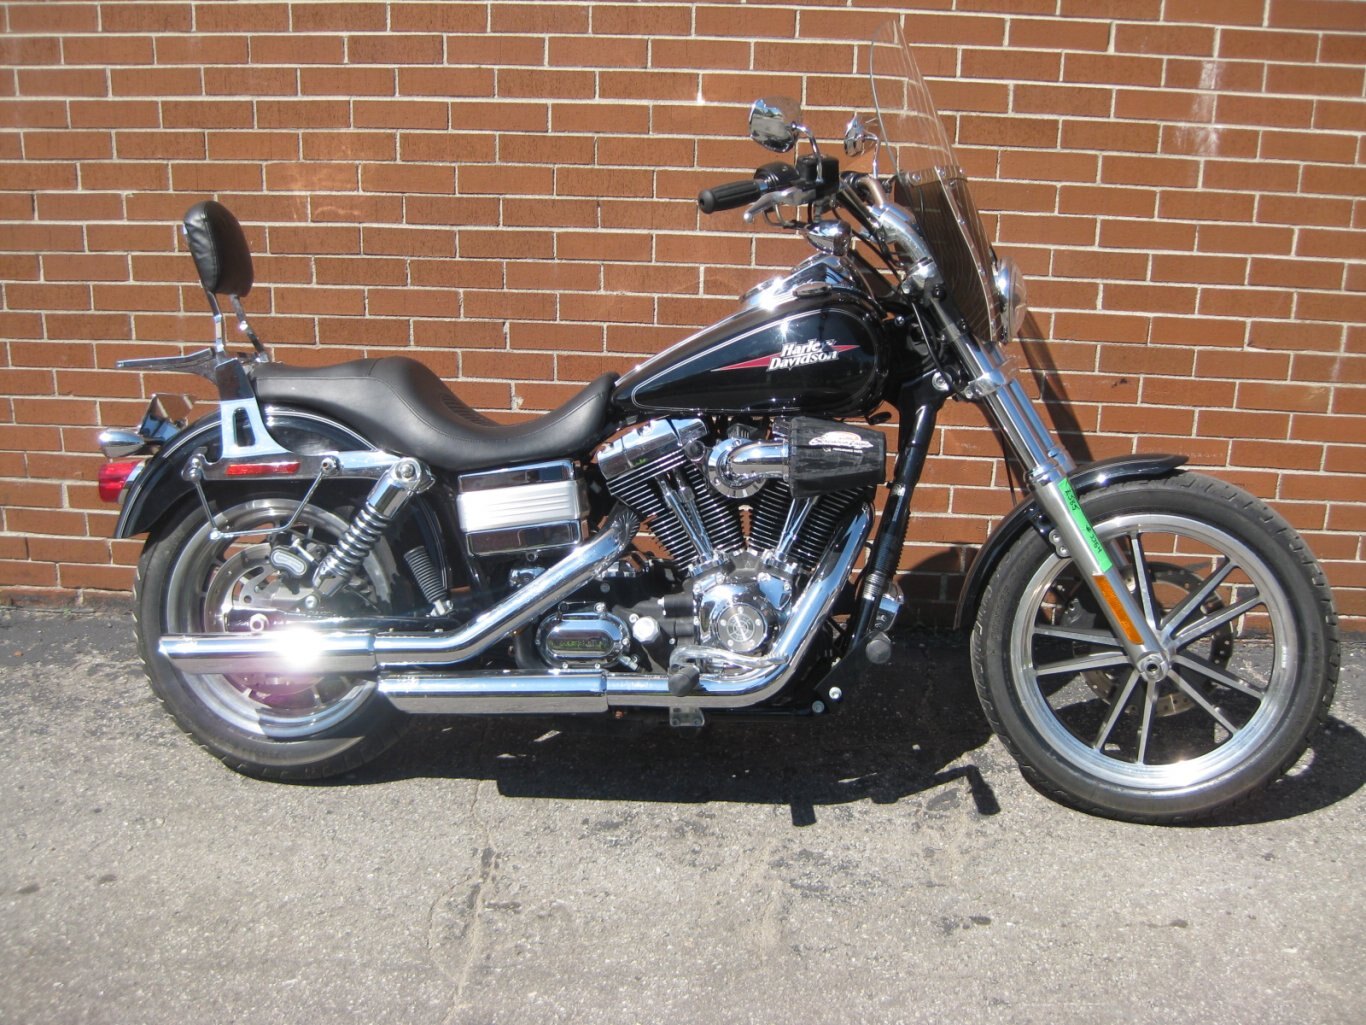 2009 Harley-Davidson Dyna Low Rider